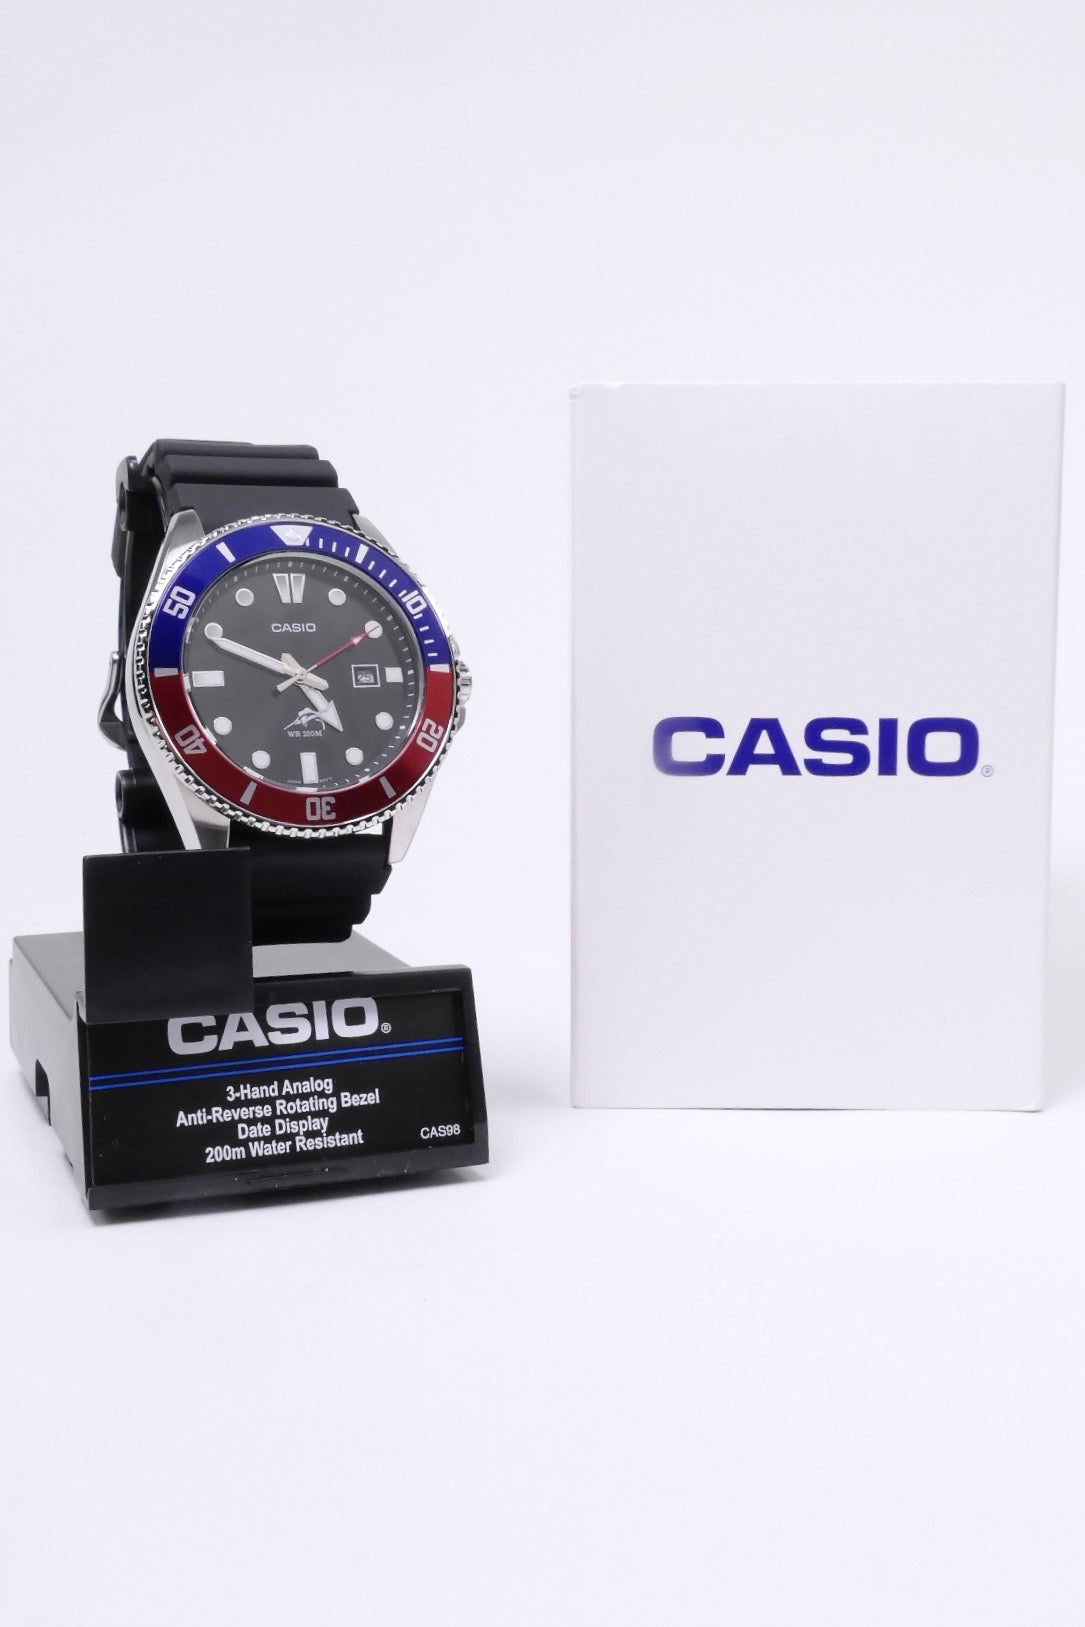 Casio MDV-106B-1A2VCF Watch - Black/Blue/Red